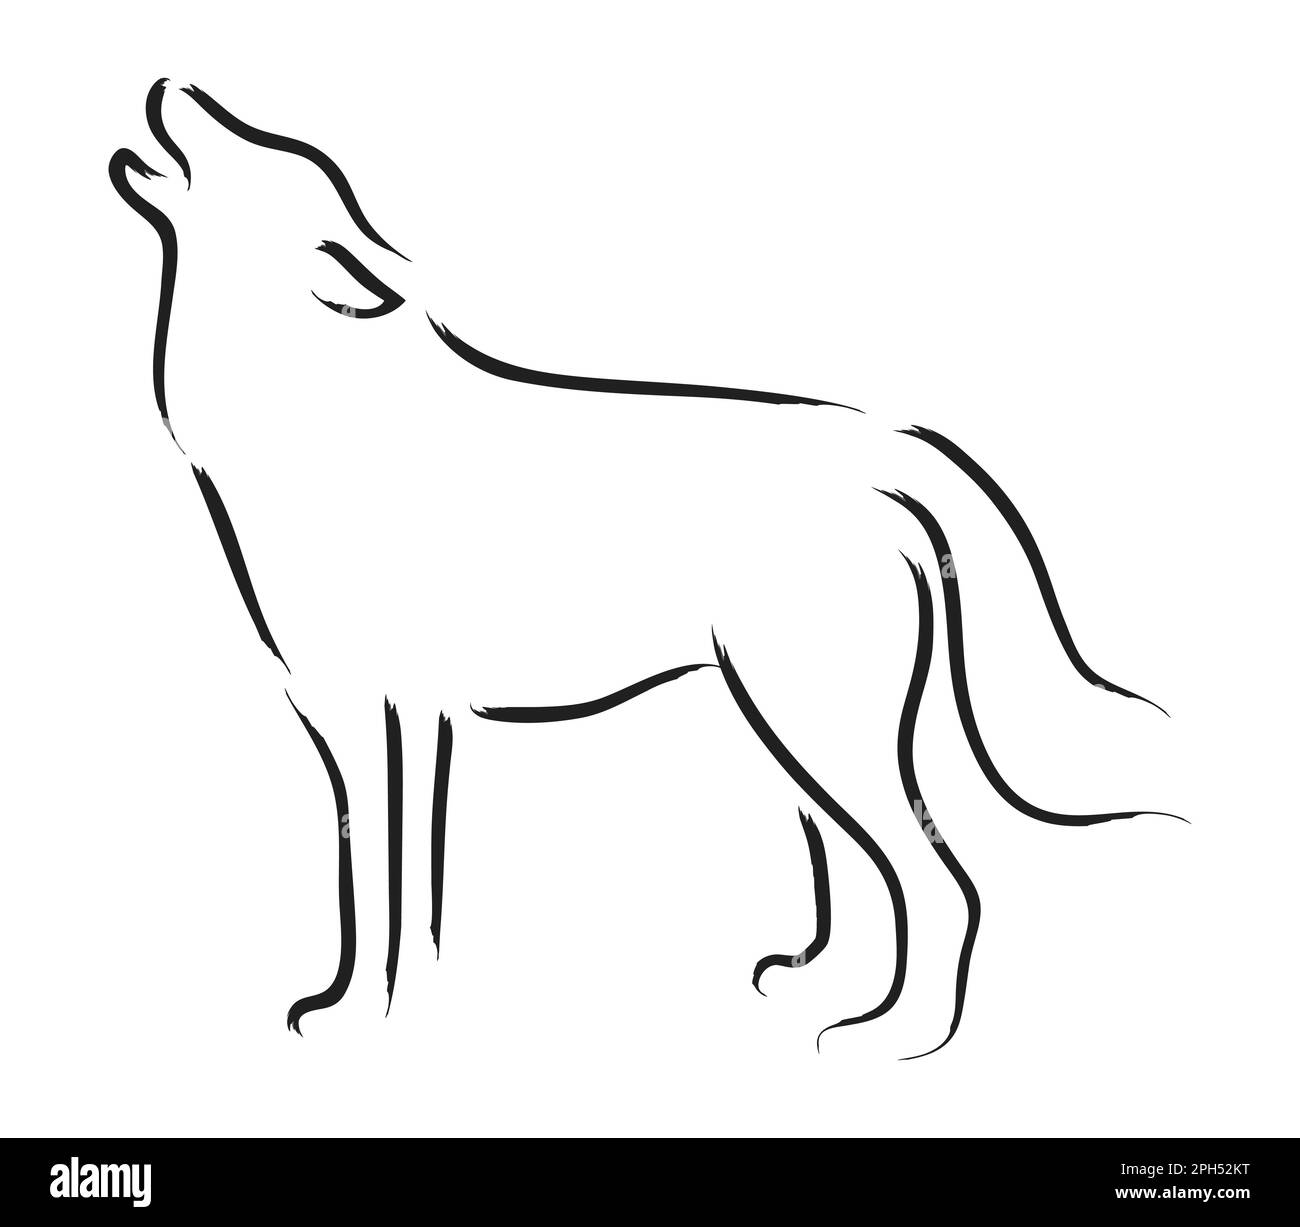 Dessin loup hurlant Banque d'images noir et blanc - Alamy